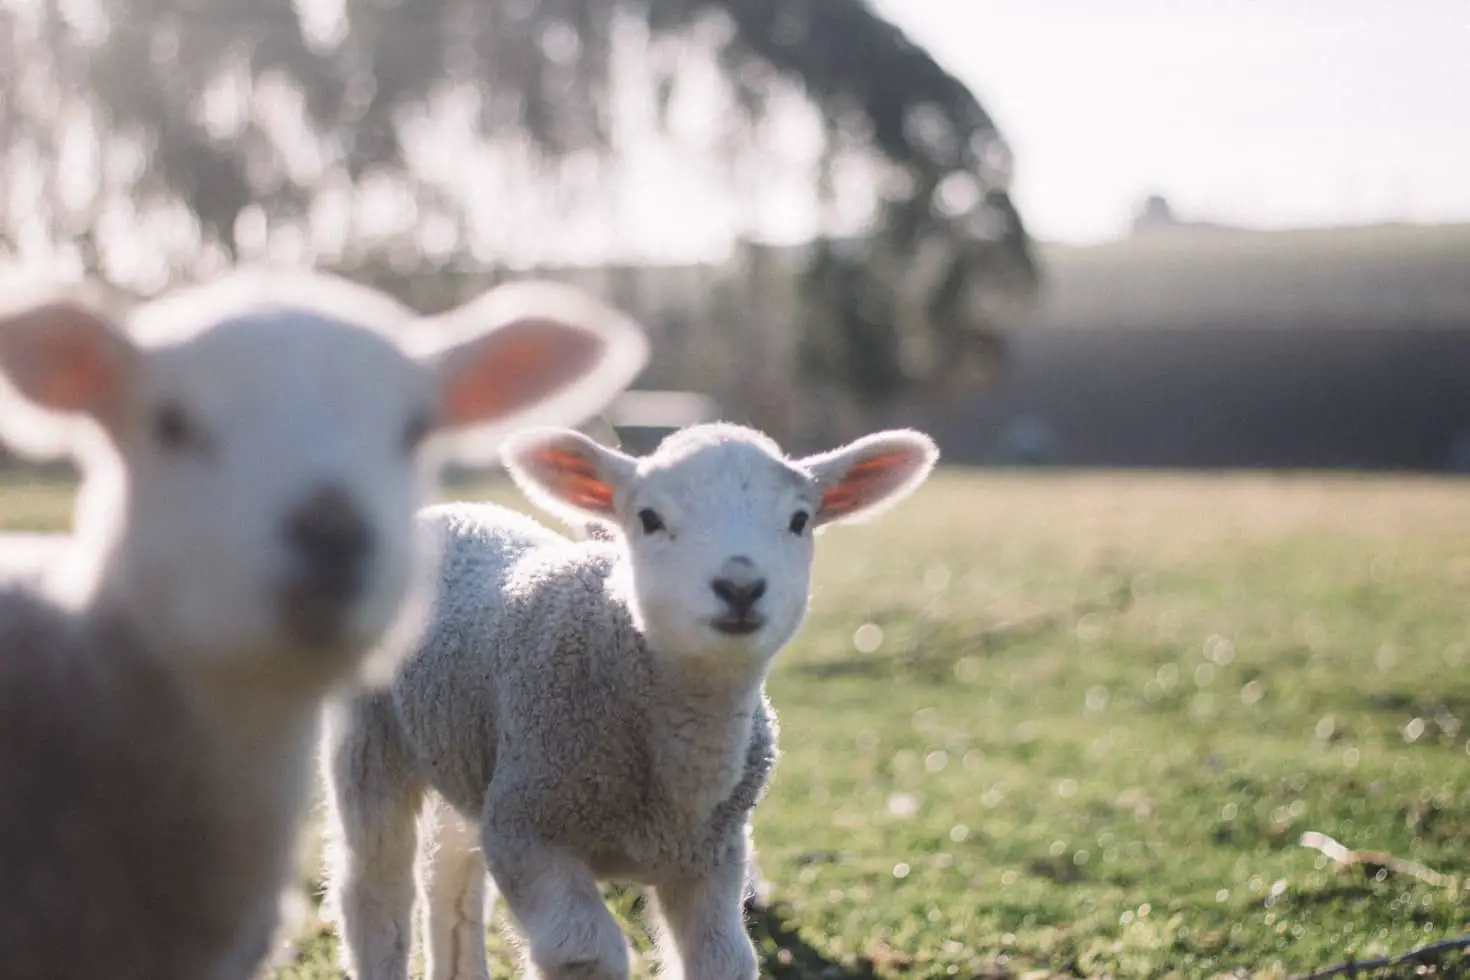 Little lambs in a field